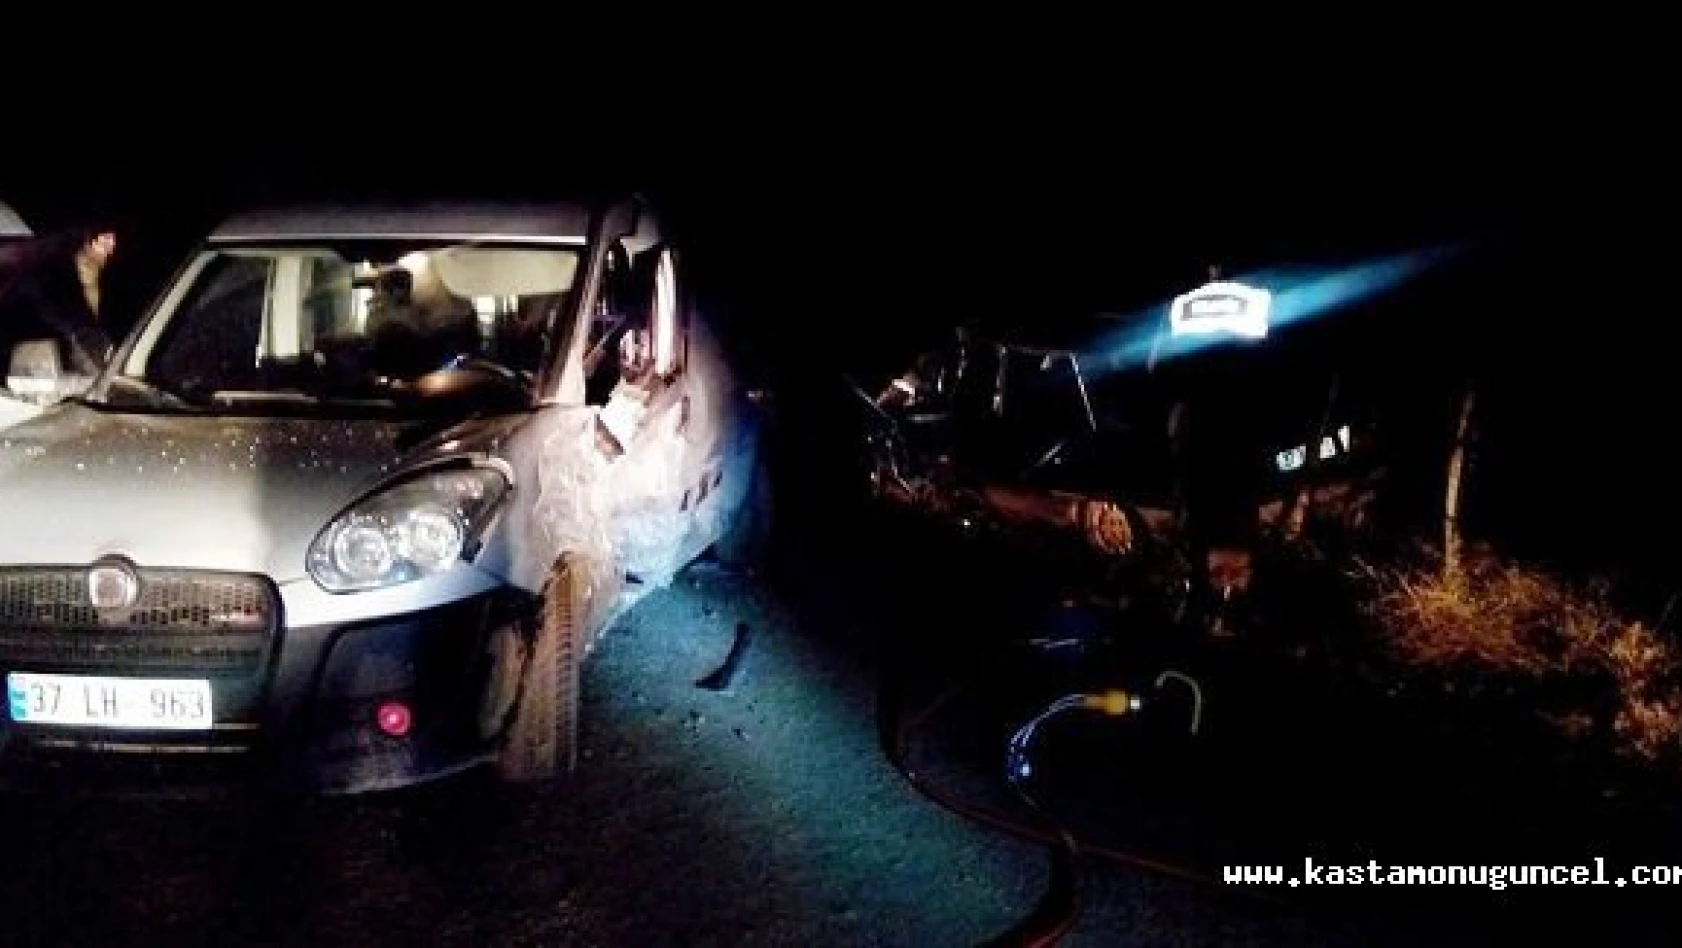 Kastamonu'da Trafik Kazası: 1 Ölü, 1 Yaralı